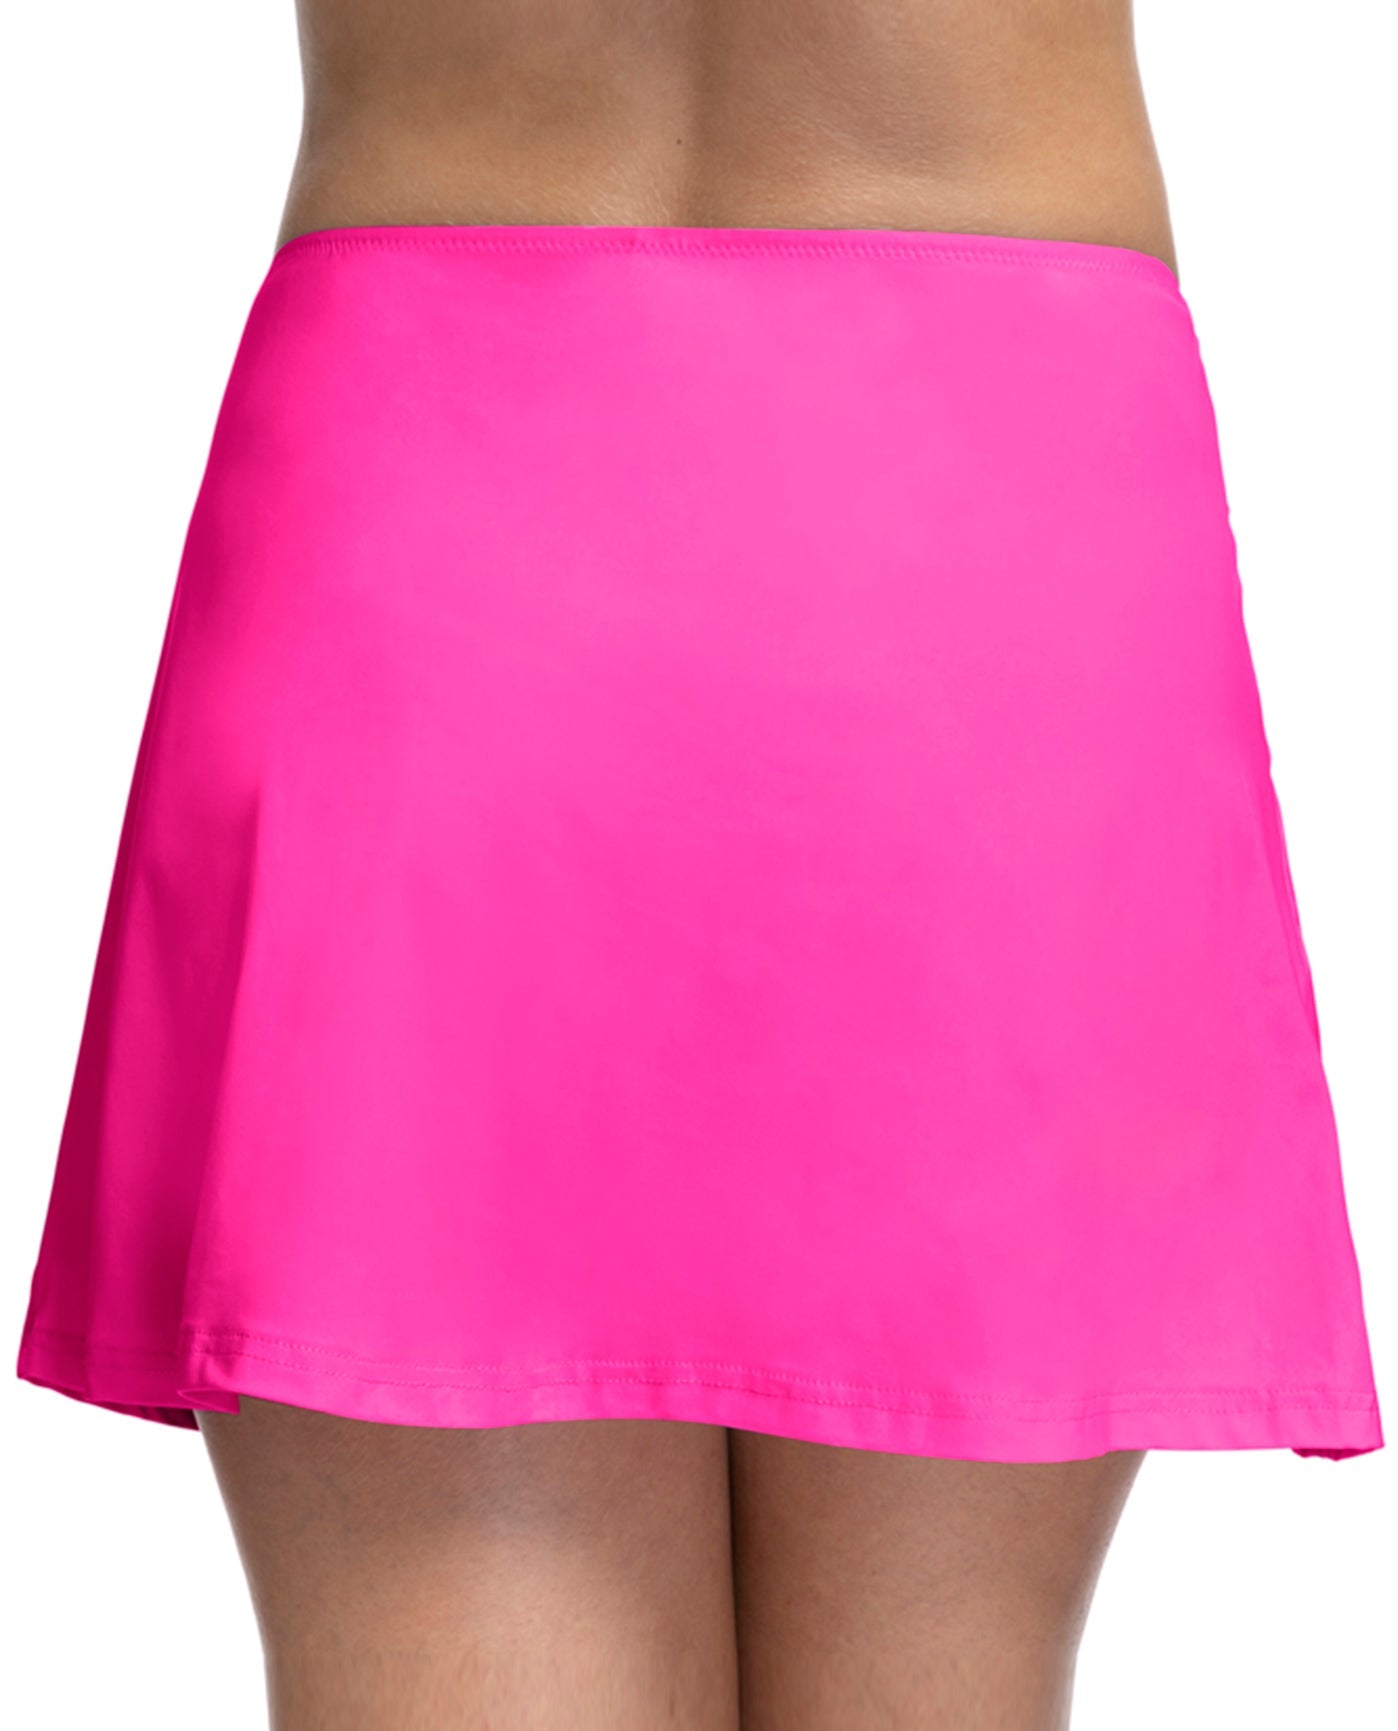 Back View Of Profile by Gottex Tutti Frutti Cover Up Skirt | PRO TUTTI FRUTTI FUCHSIA